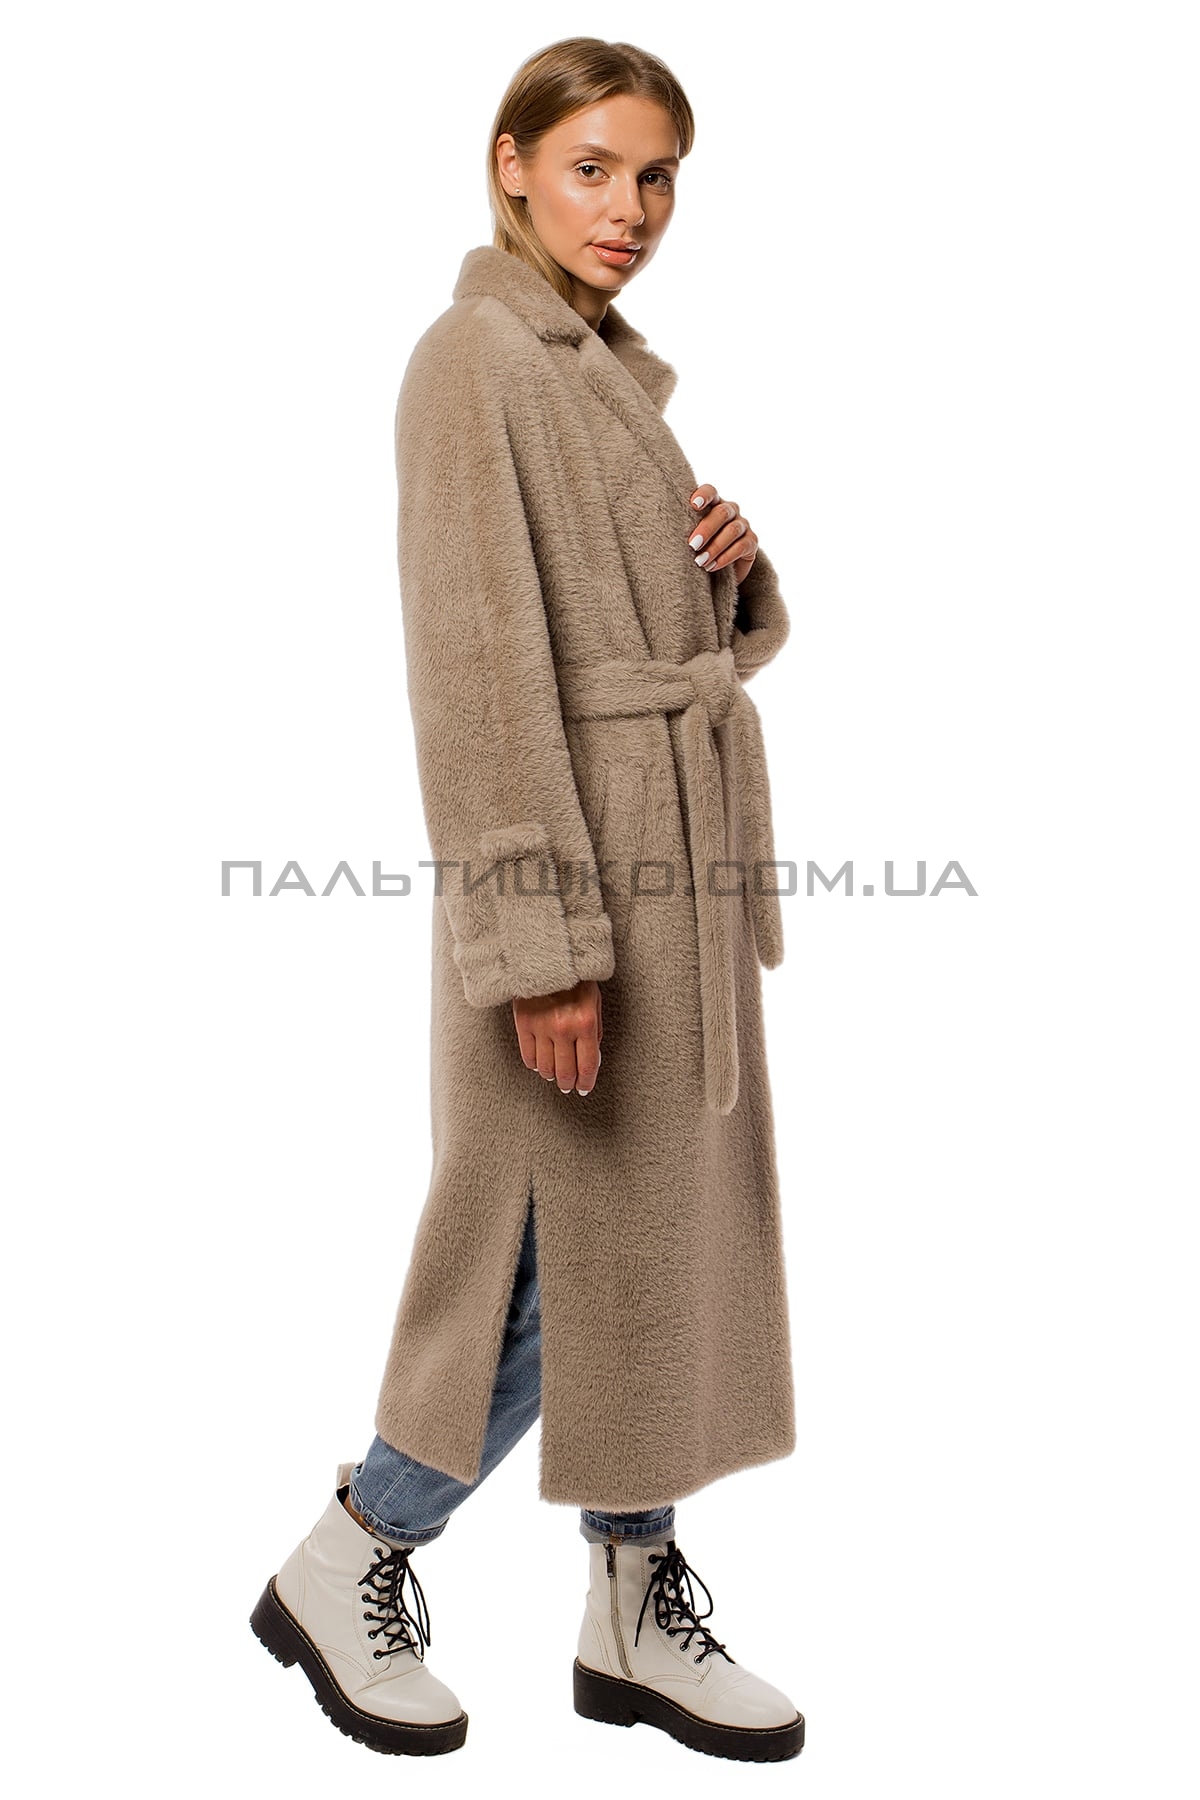  Женское пальто-шуба mokko